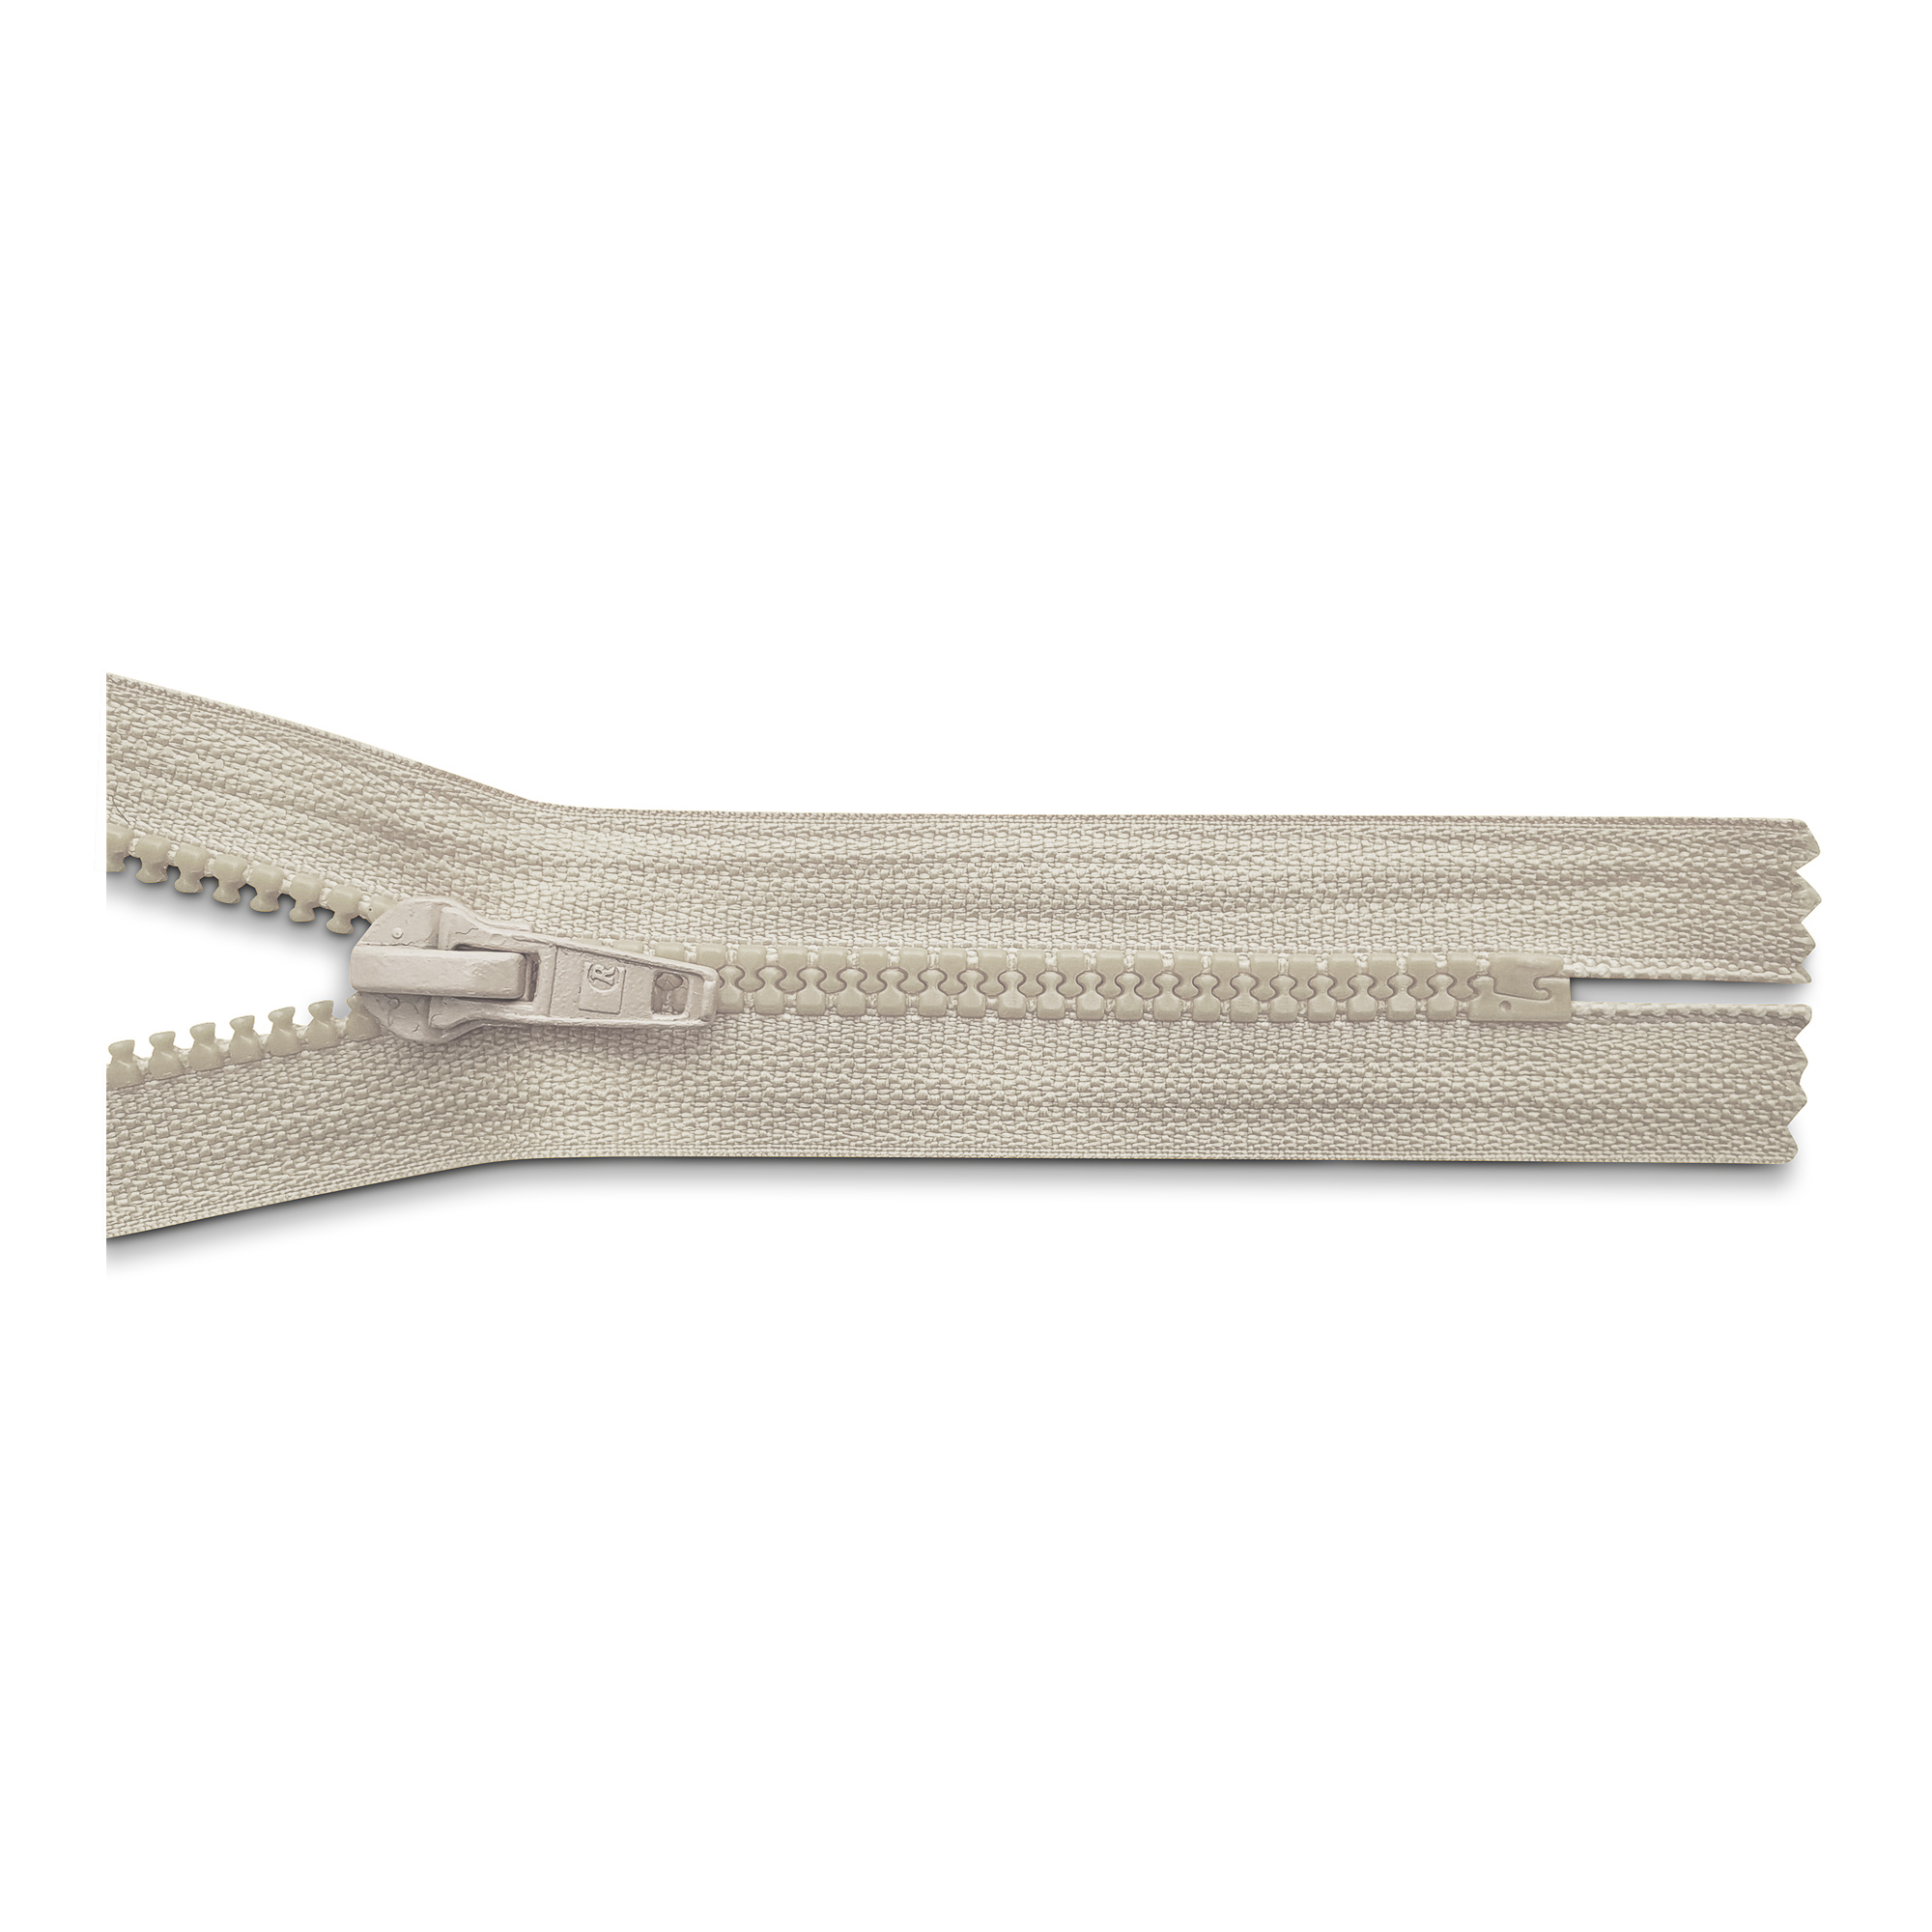 Reißverschluss 16cm, nicht teilbar, K.stoff Zähne breit, hellbeige, hochwertiger Marken-Reißverschluss von Rubi/Barcelona